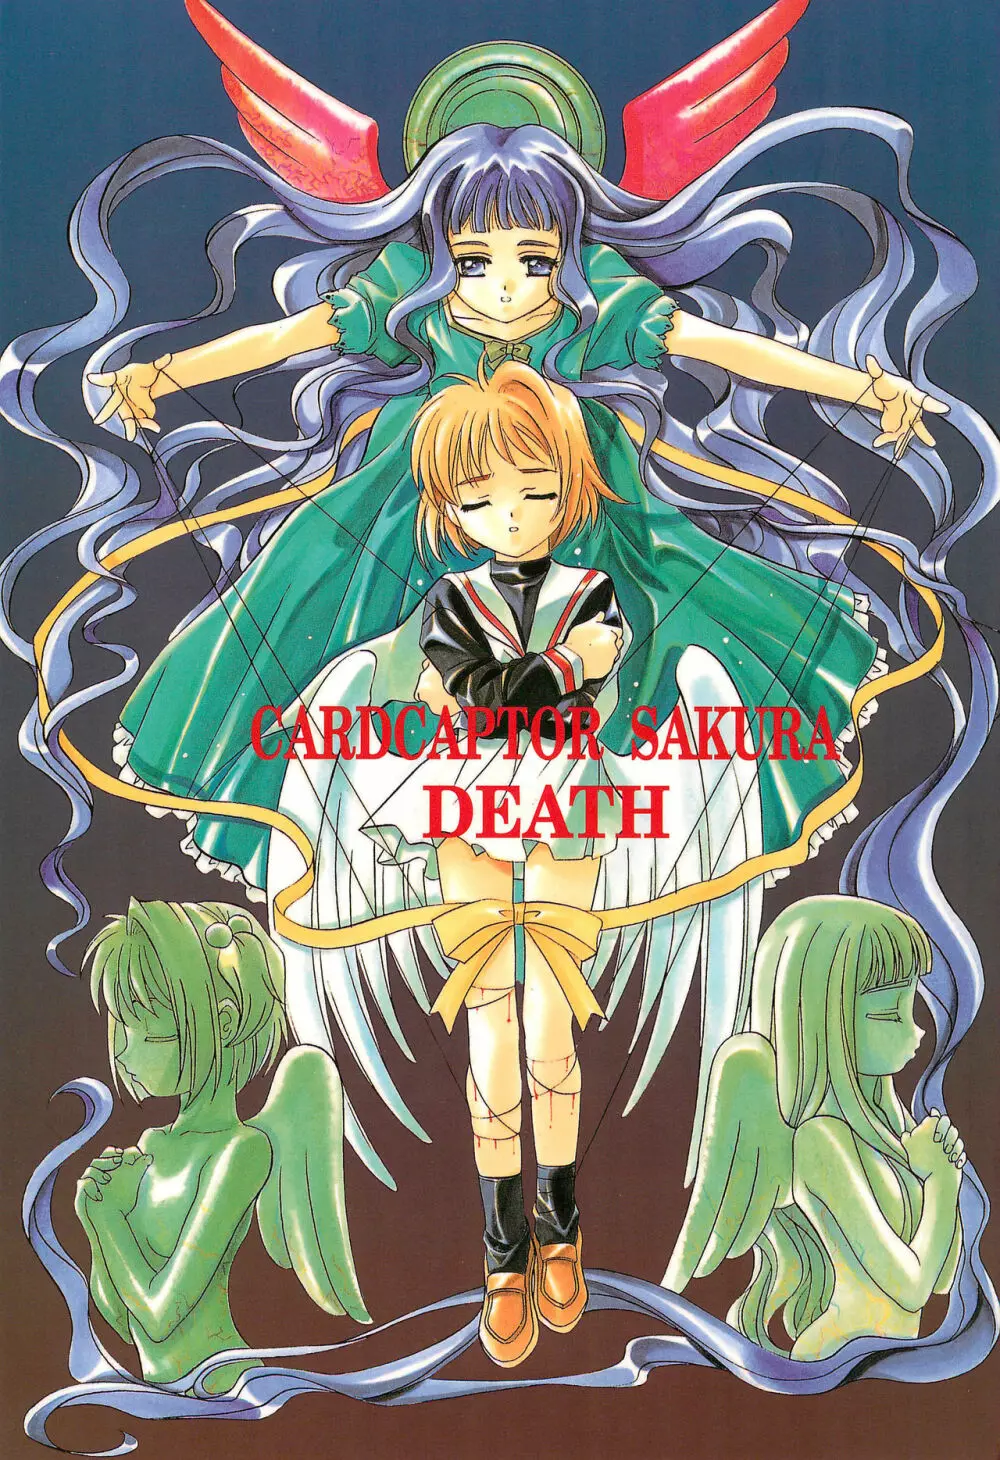 CARDCAPTOR SAKURA DEATH - page1